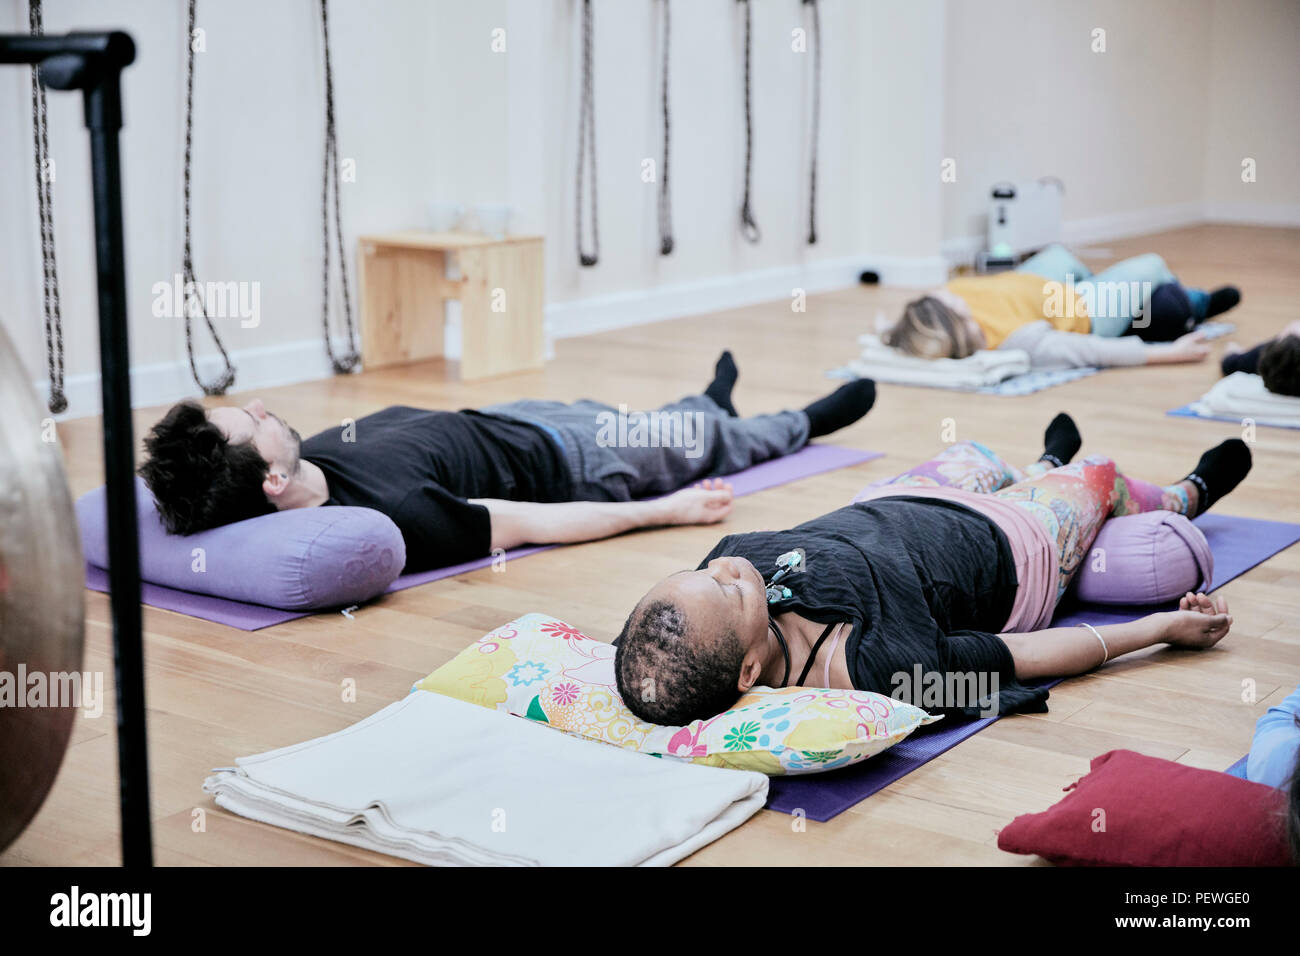 Menschen liegend auf einer Übung studio Stock entspannen nach einem Sound Therapie Sitzung Stockfoto